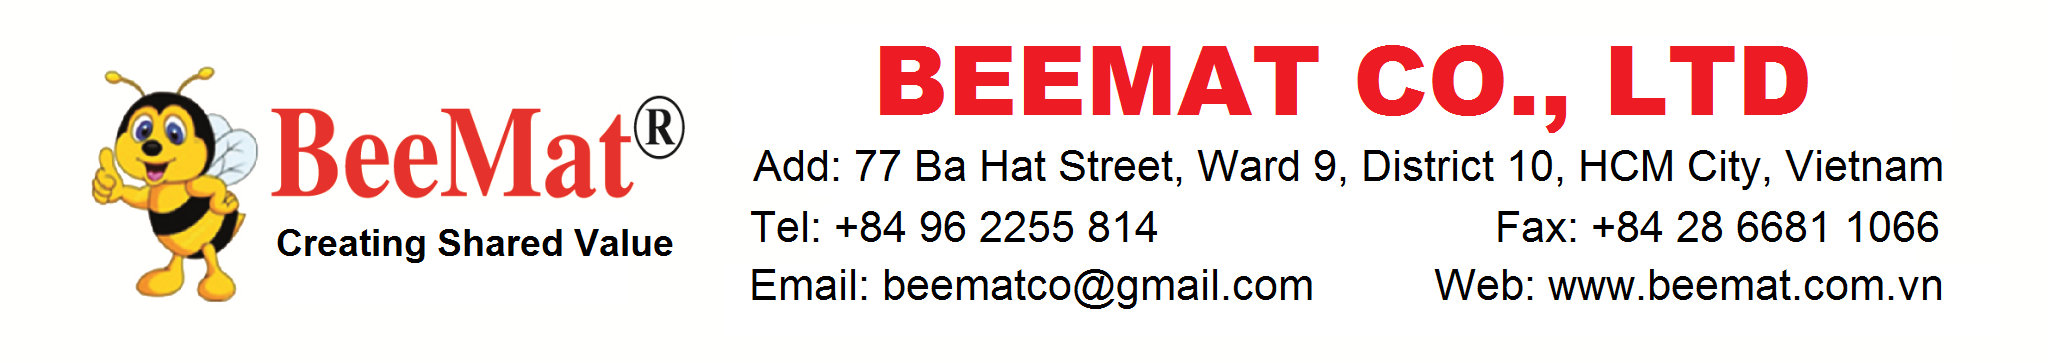 BeeMat